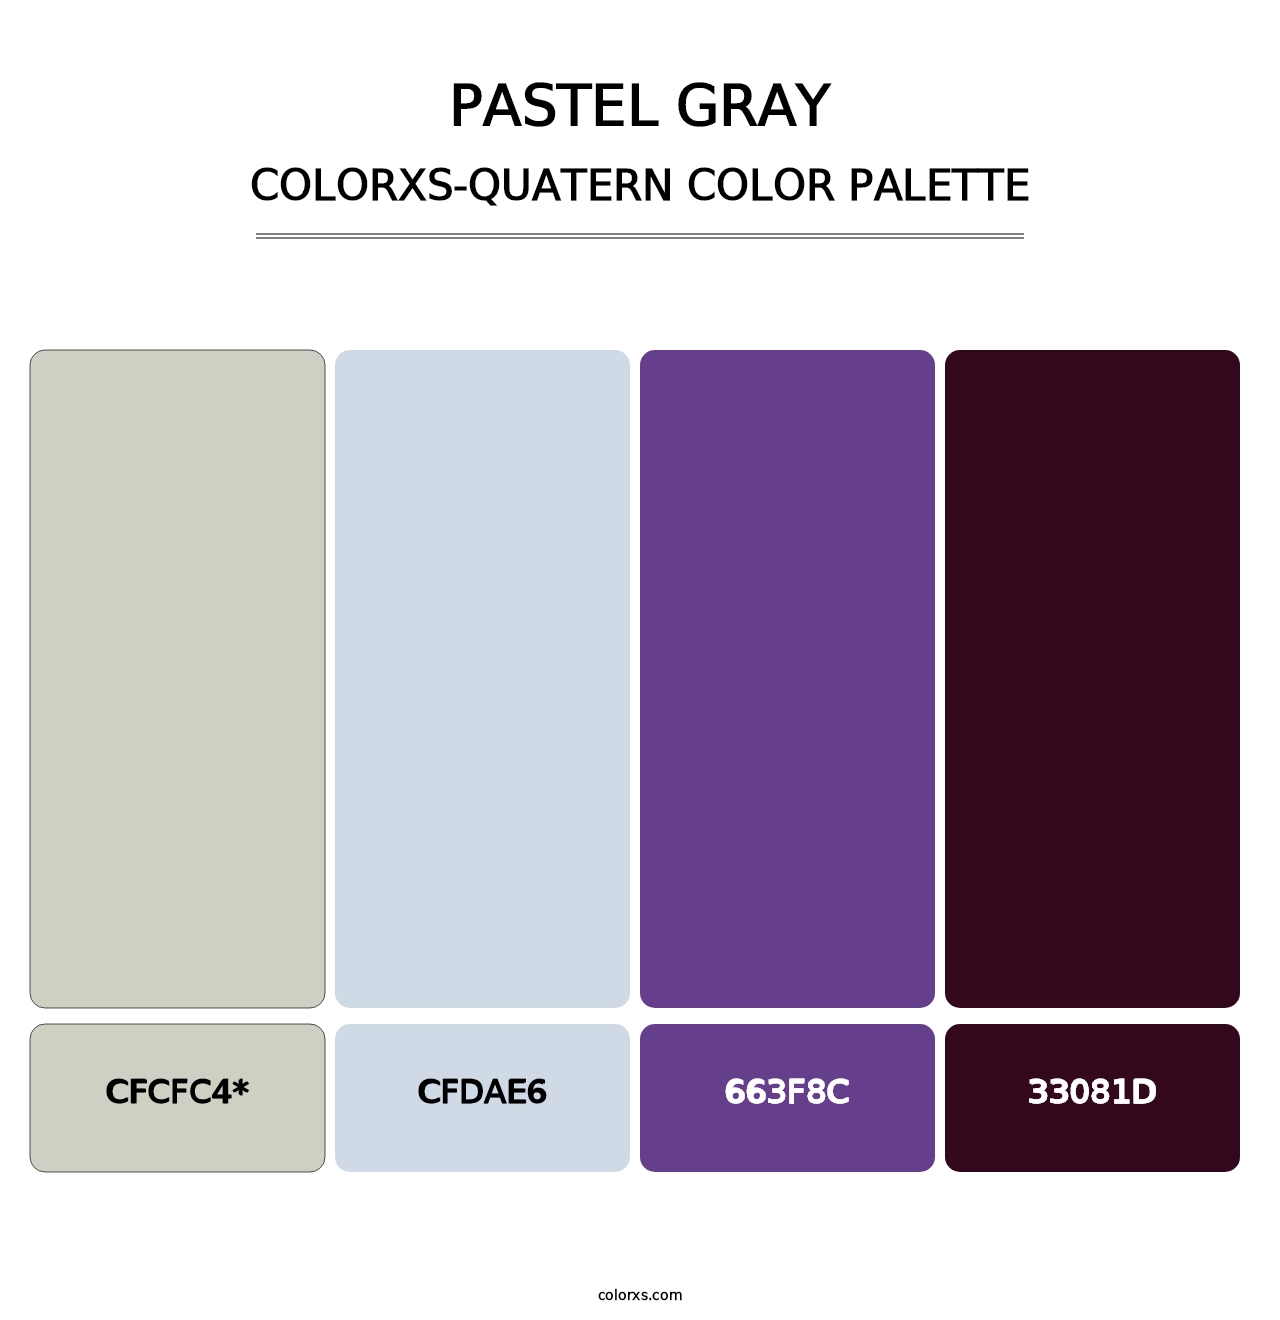 Pastel Gray - Colorxs Quatern Palette